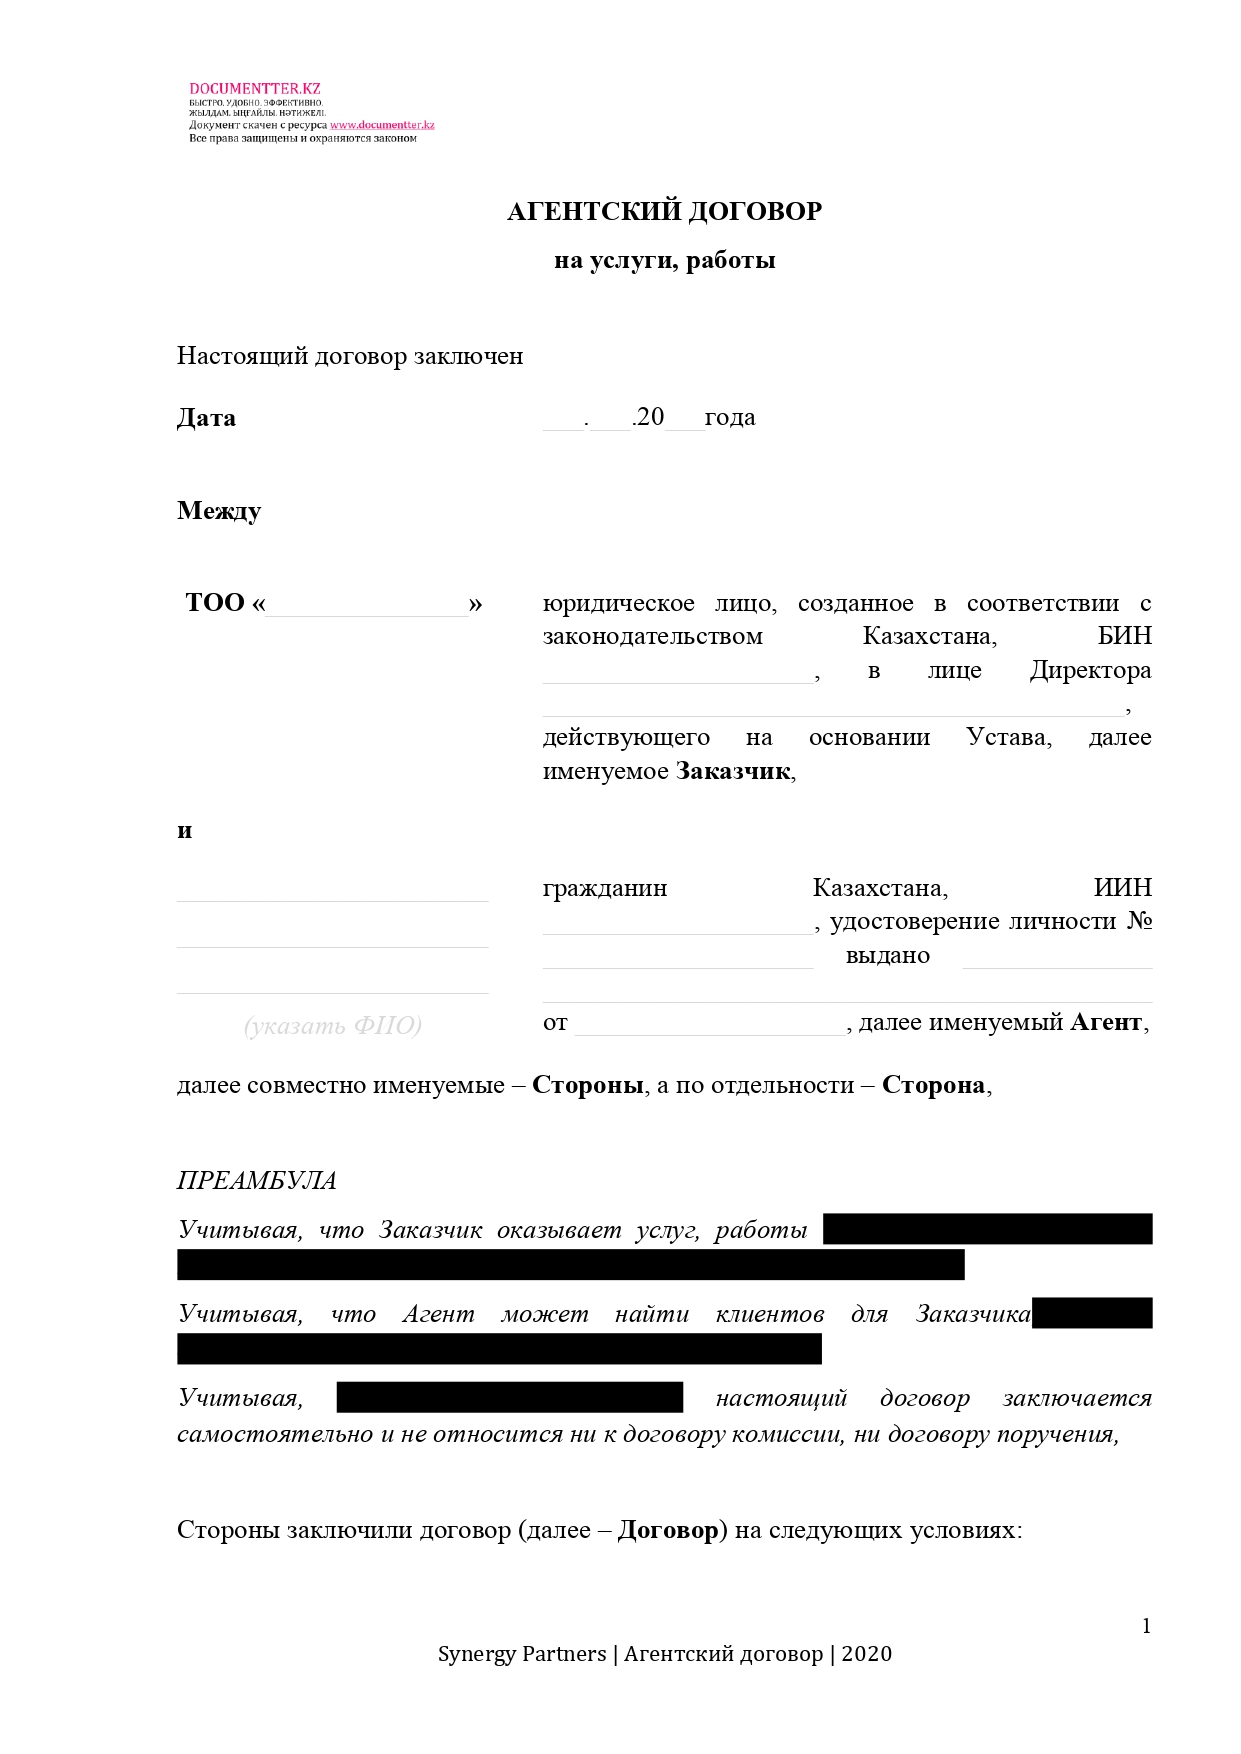 Агентский договор на услуги, работы  | documentter.kz в Казахстане 